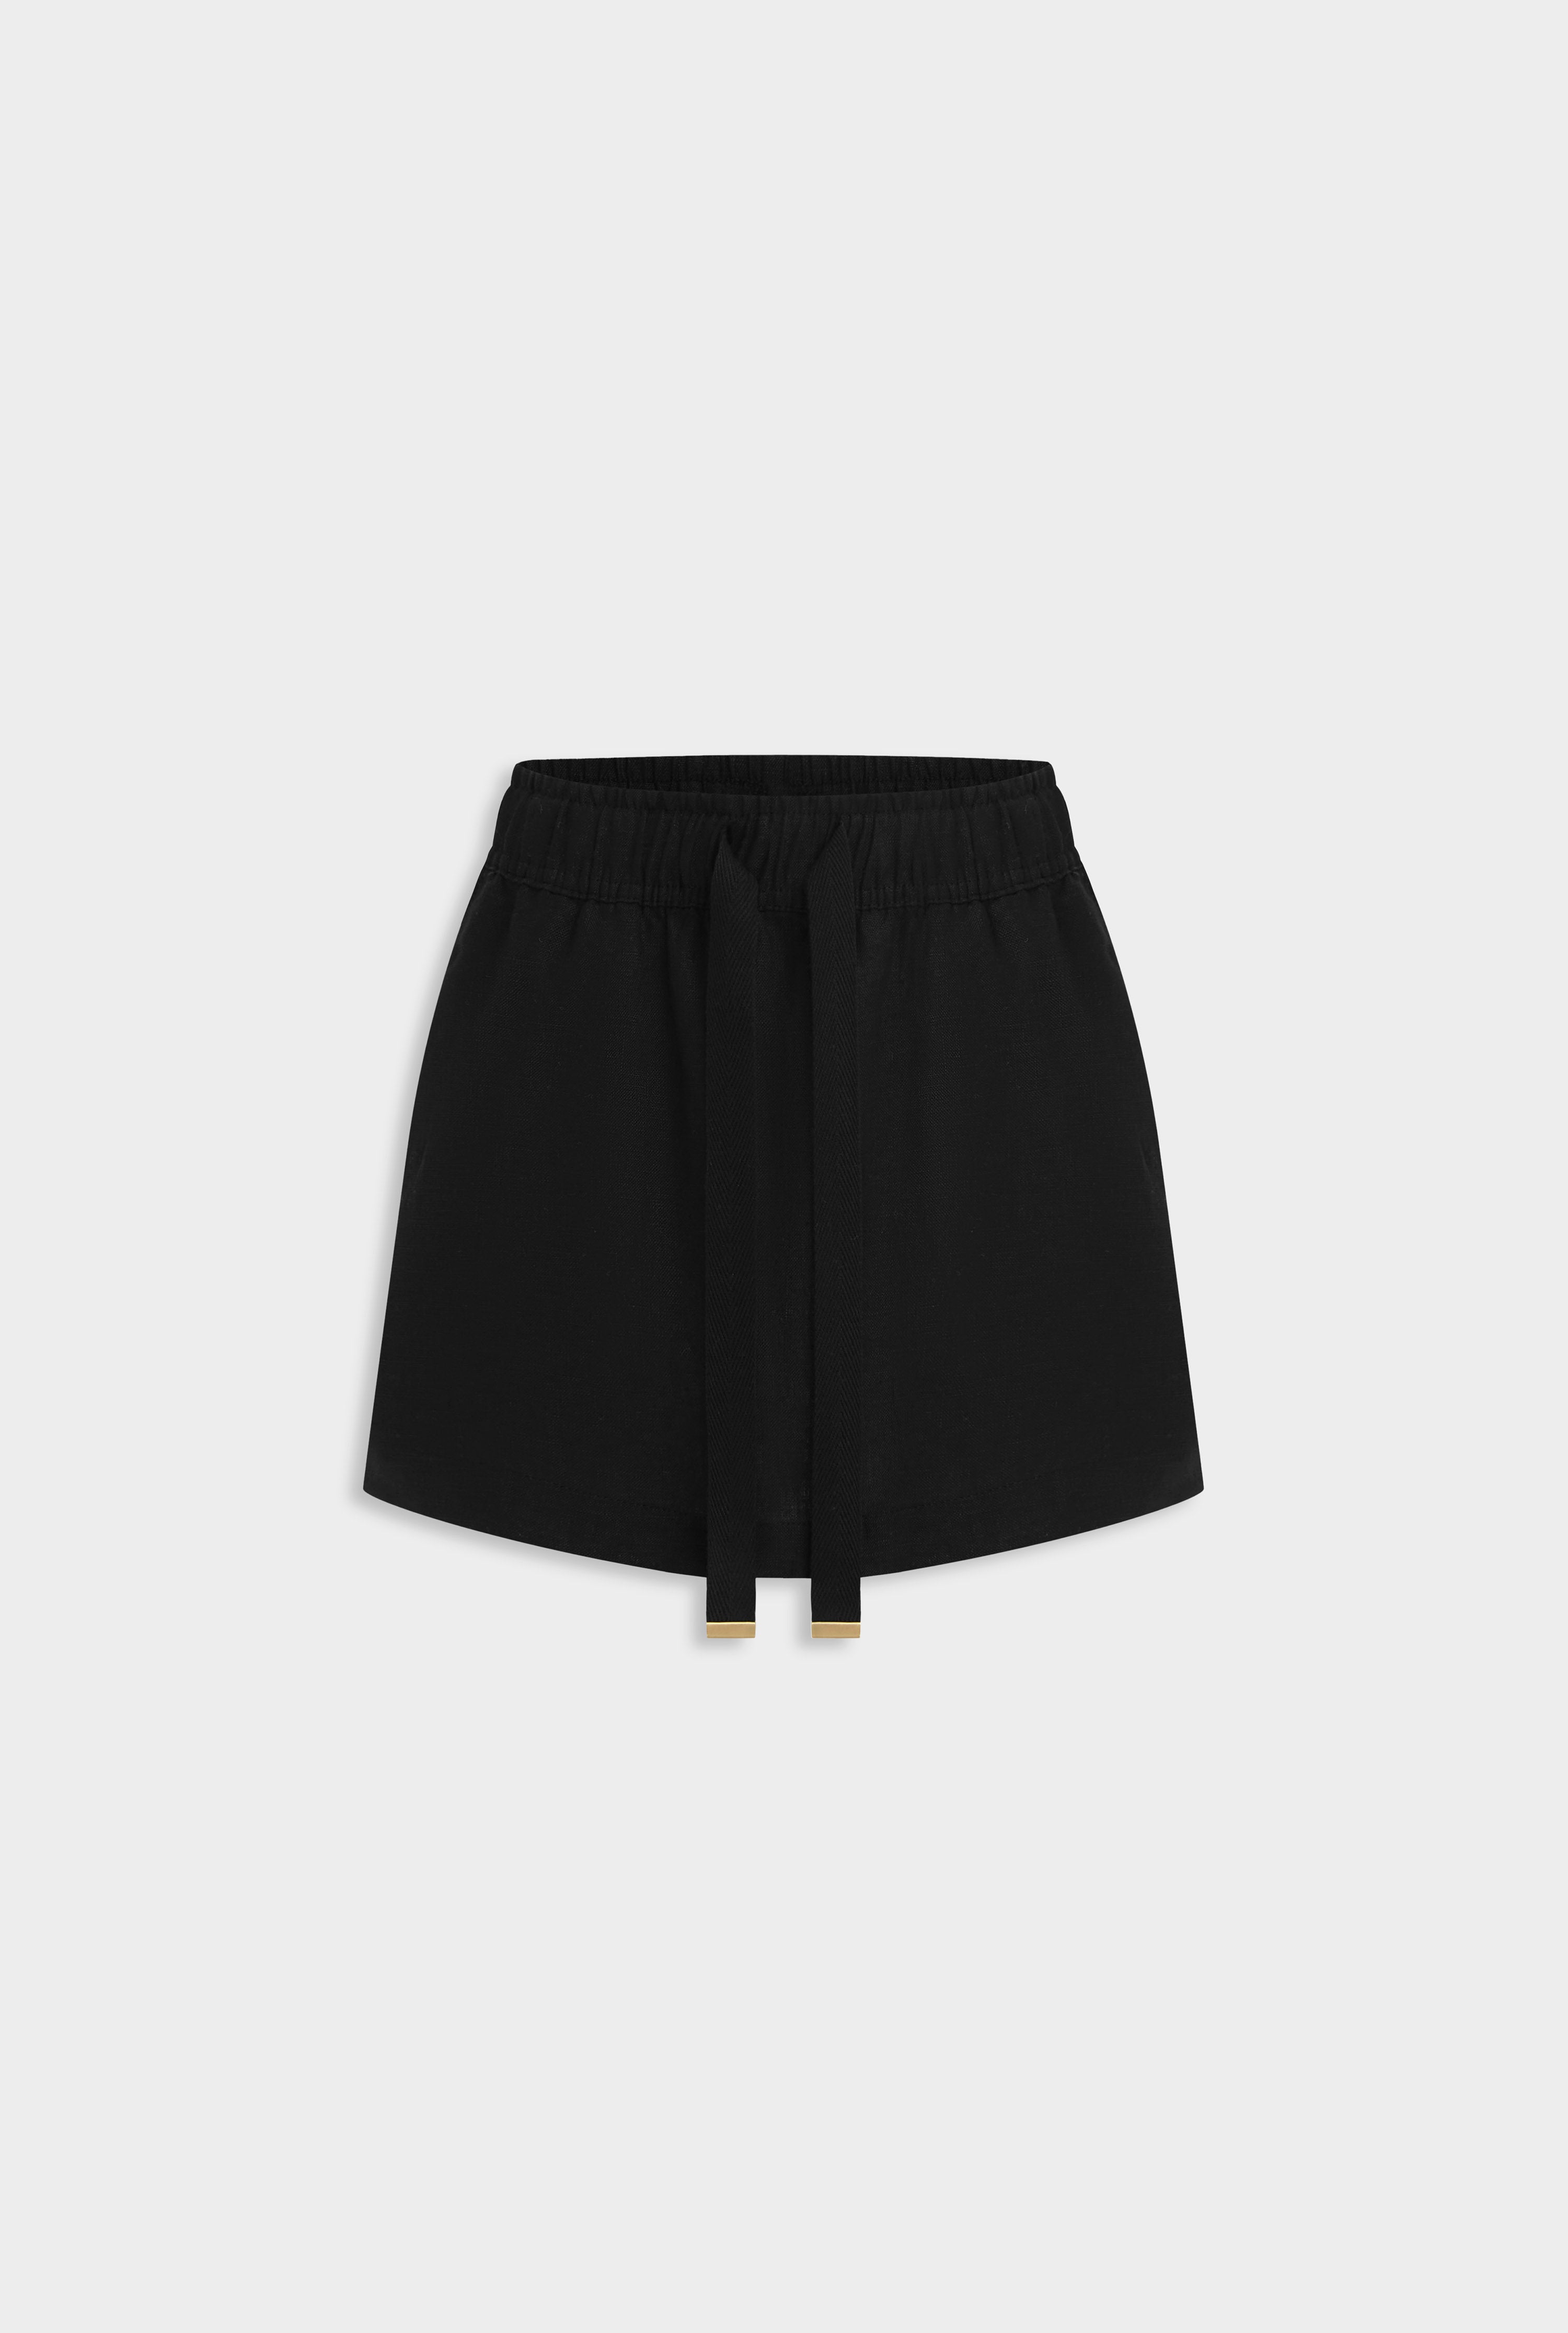 Lounge Skirt - Black